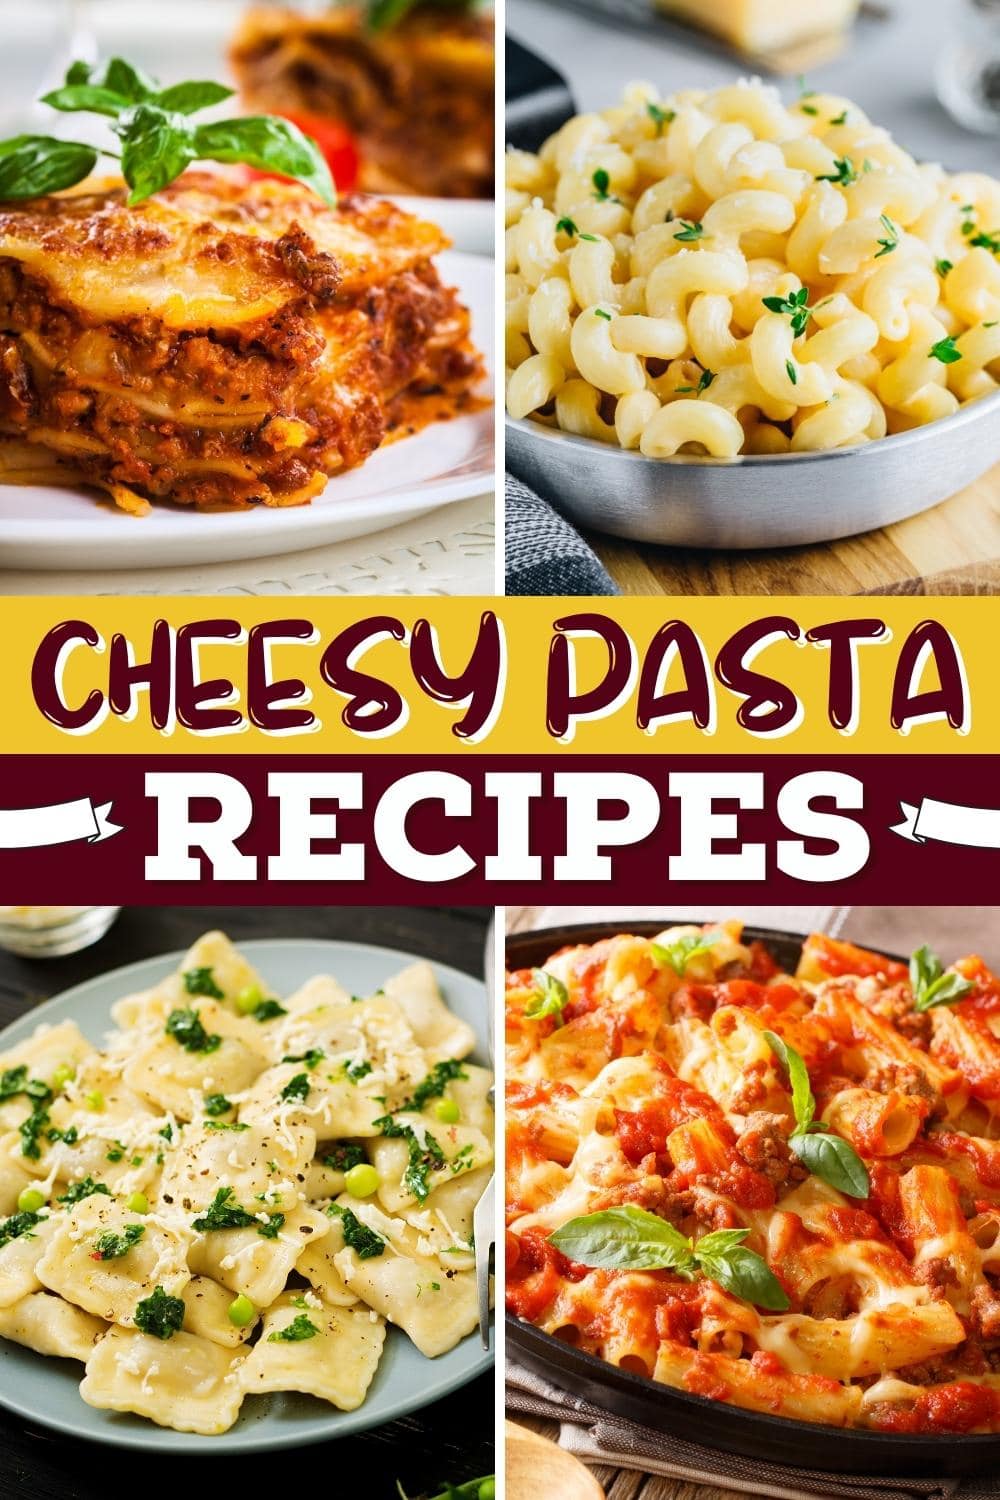 23 Easy Cheesy Pasta Recipes You’ll Love - Insanely Good